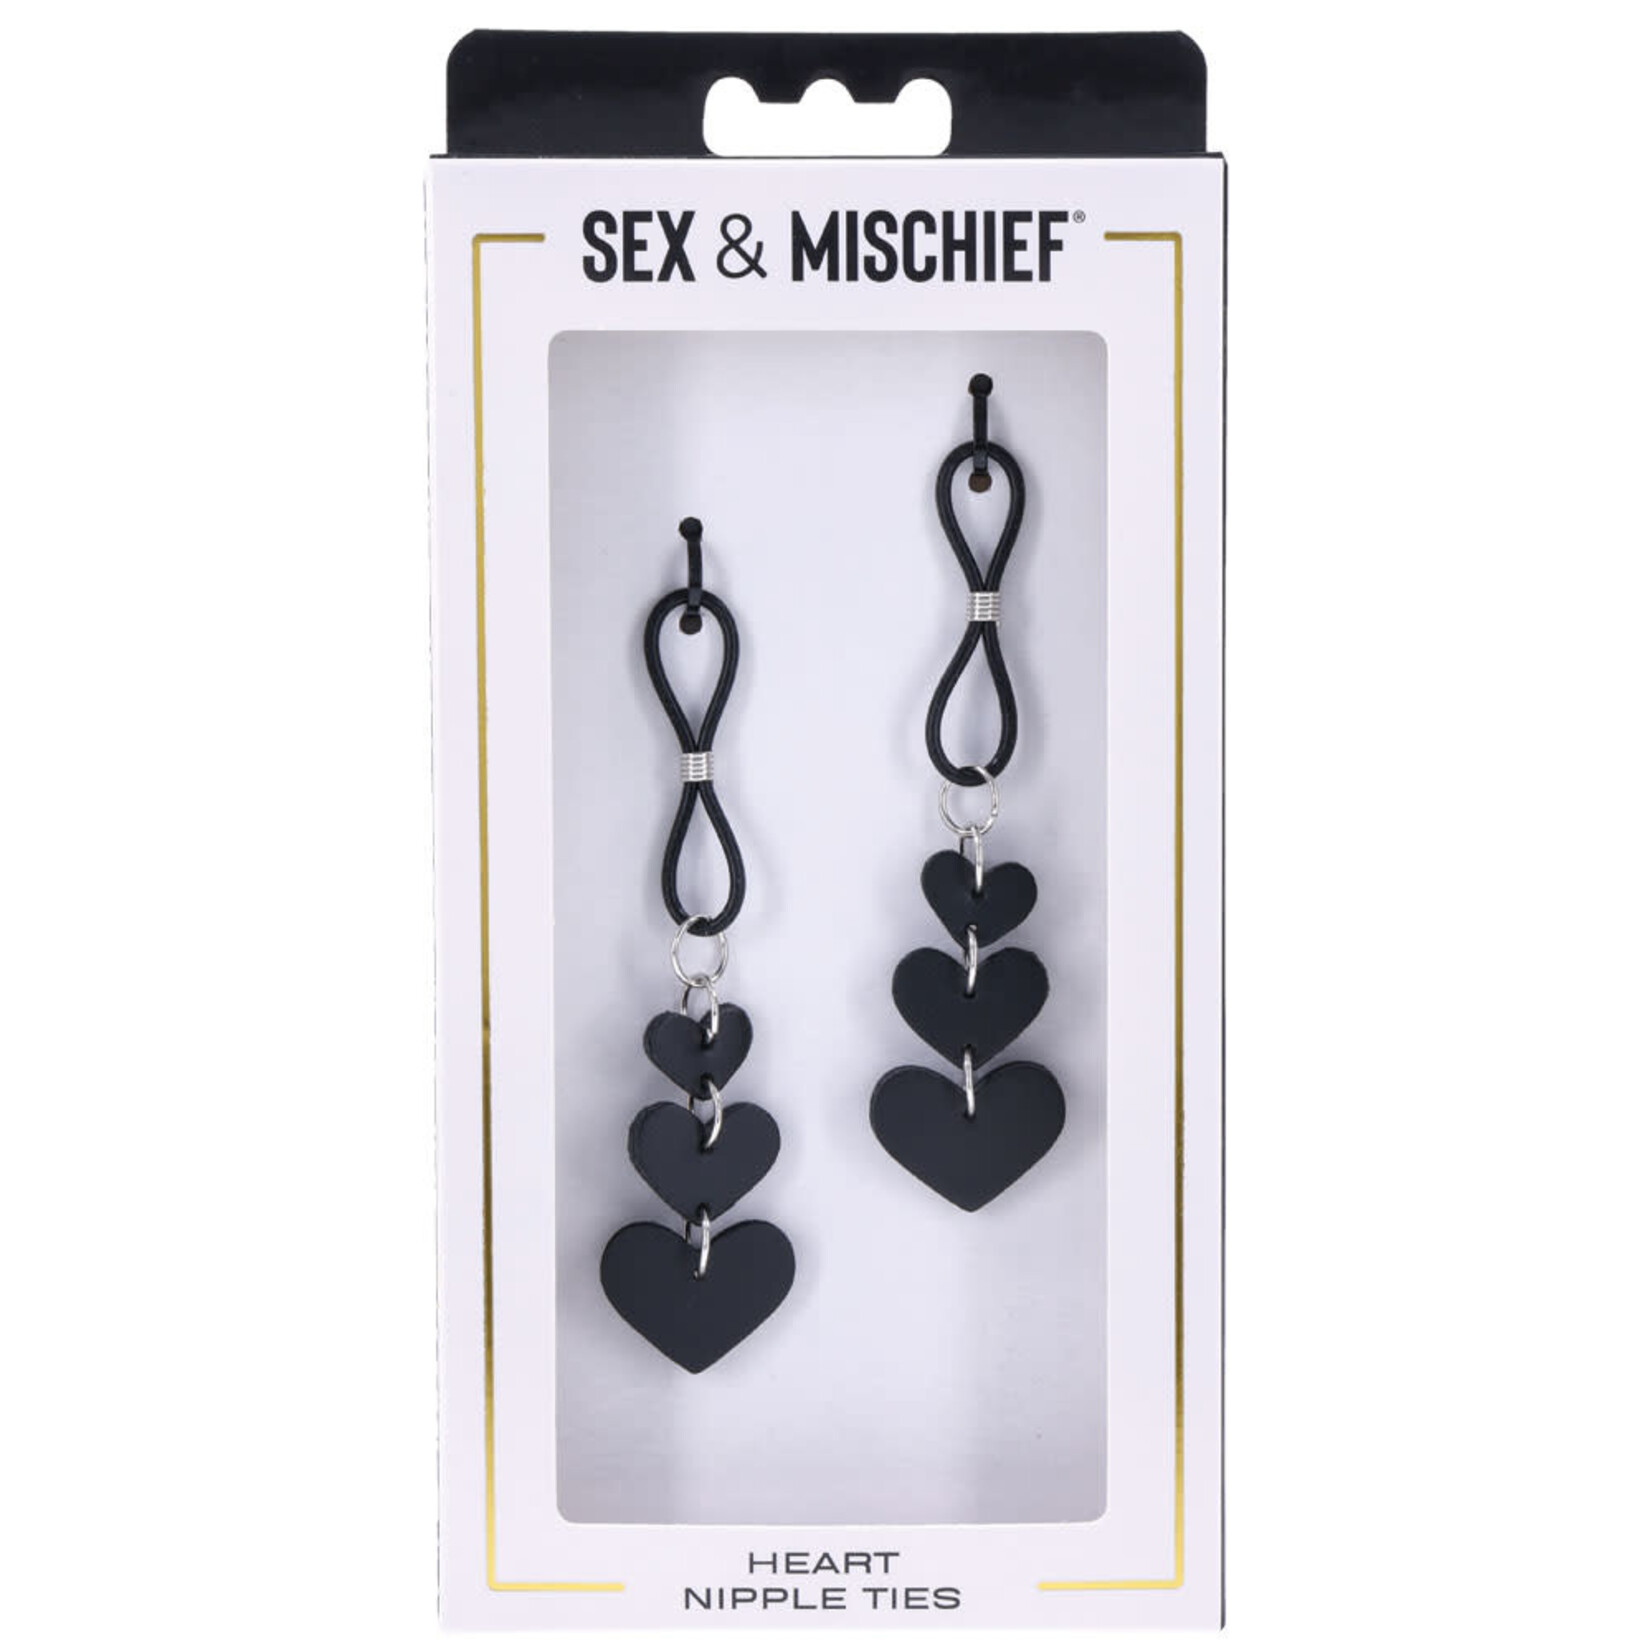 SEX & MISCHIEF SEX & MISCHIEF HEART NIPPLE TIES